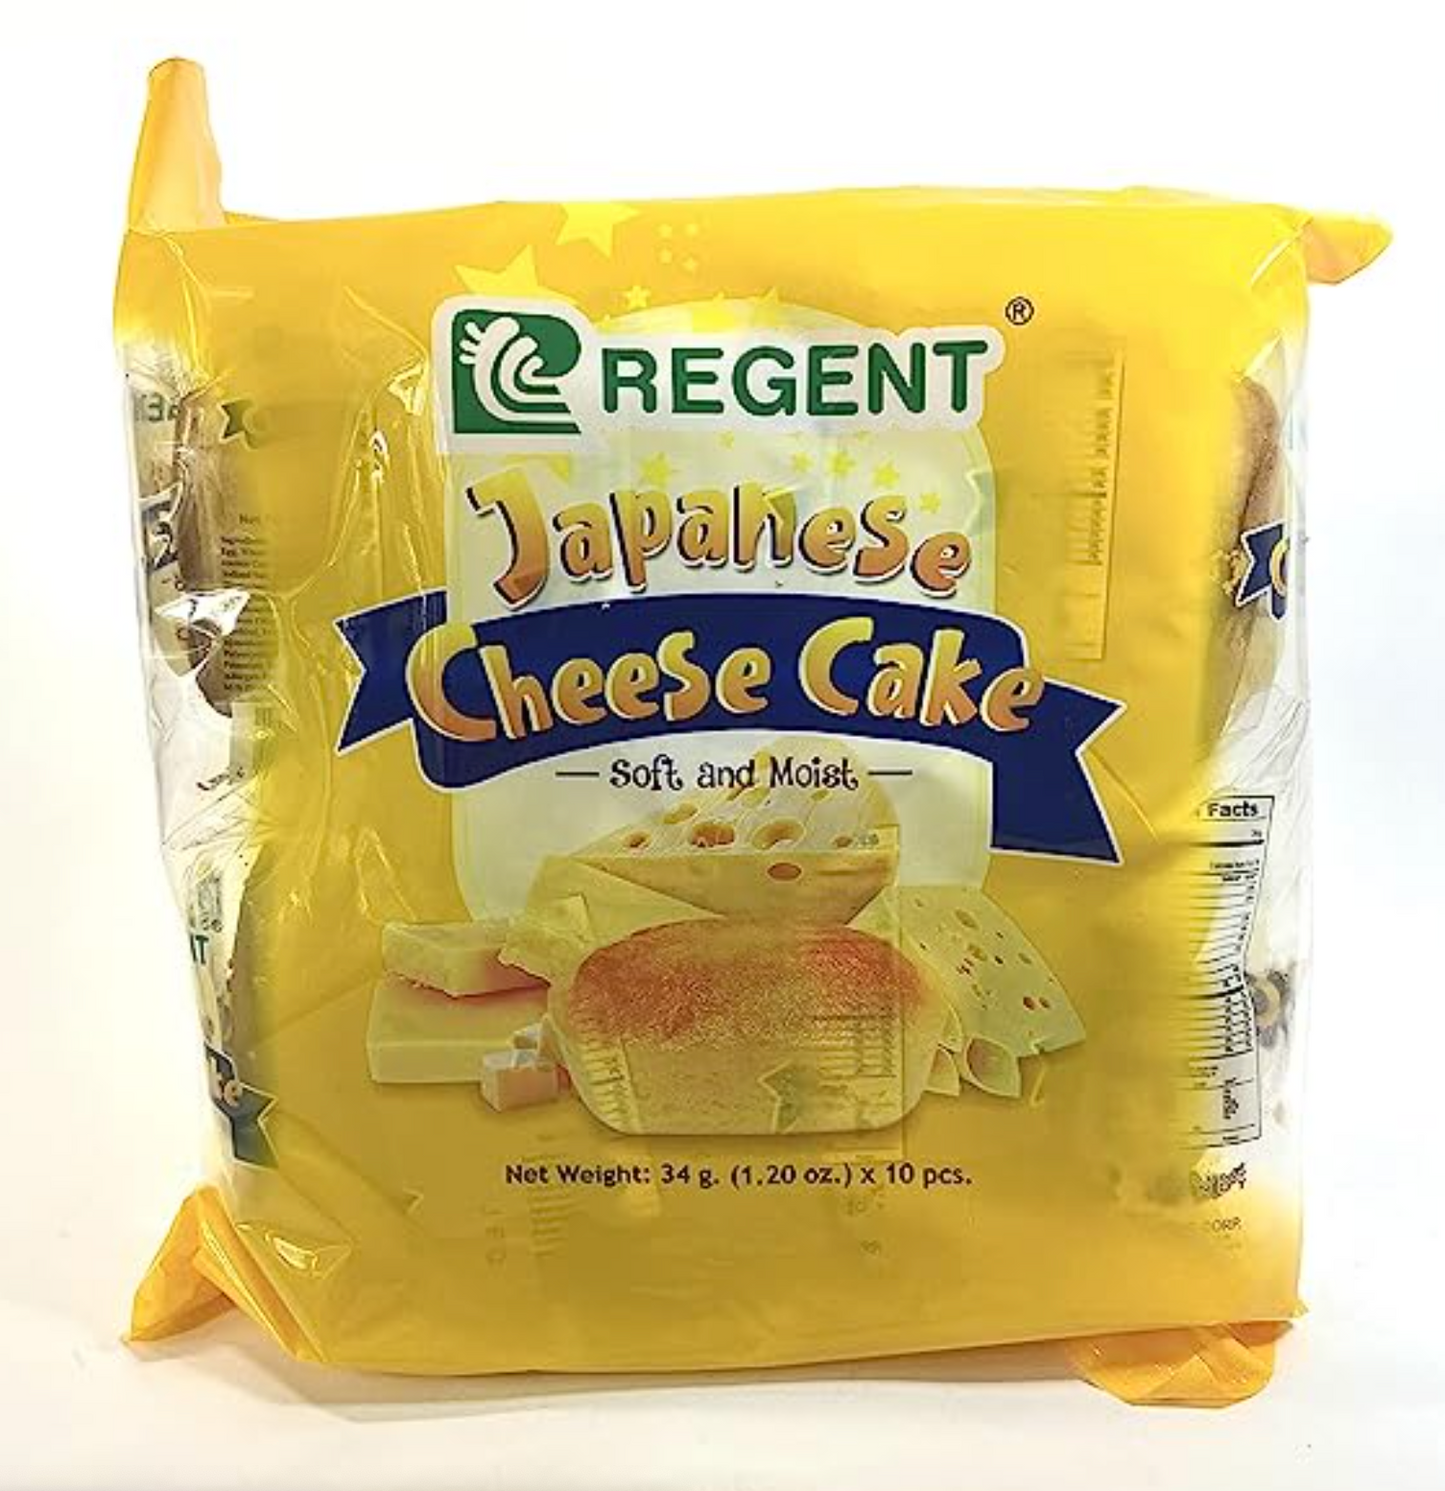 Regent Japanese Cheese Cake 10 X 34g